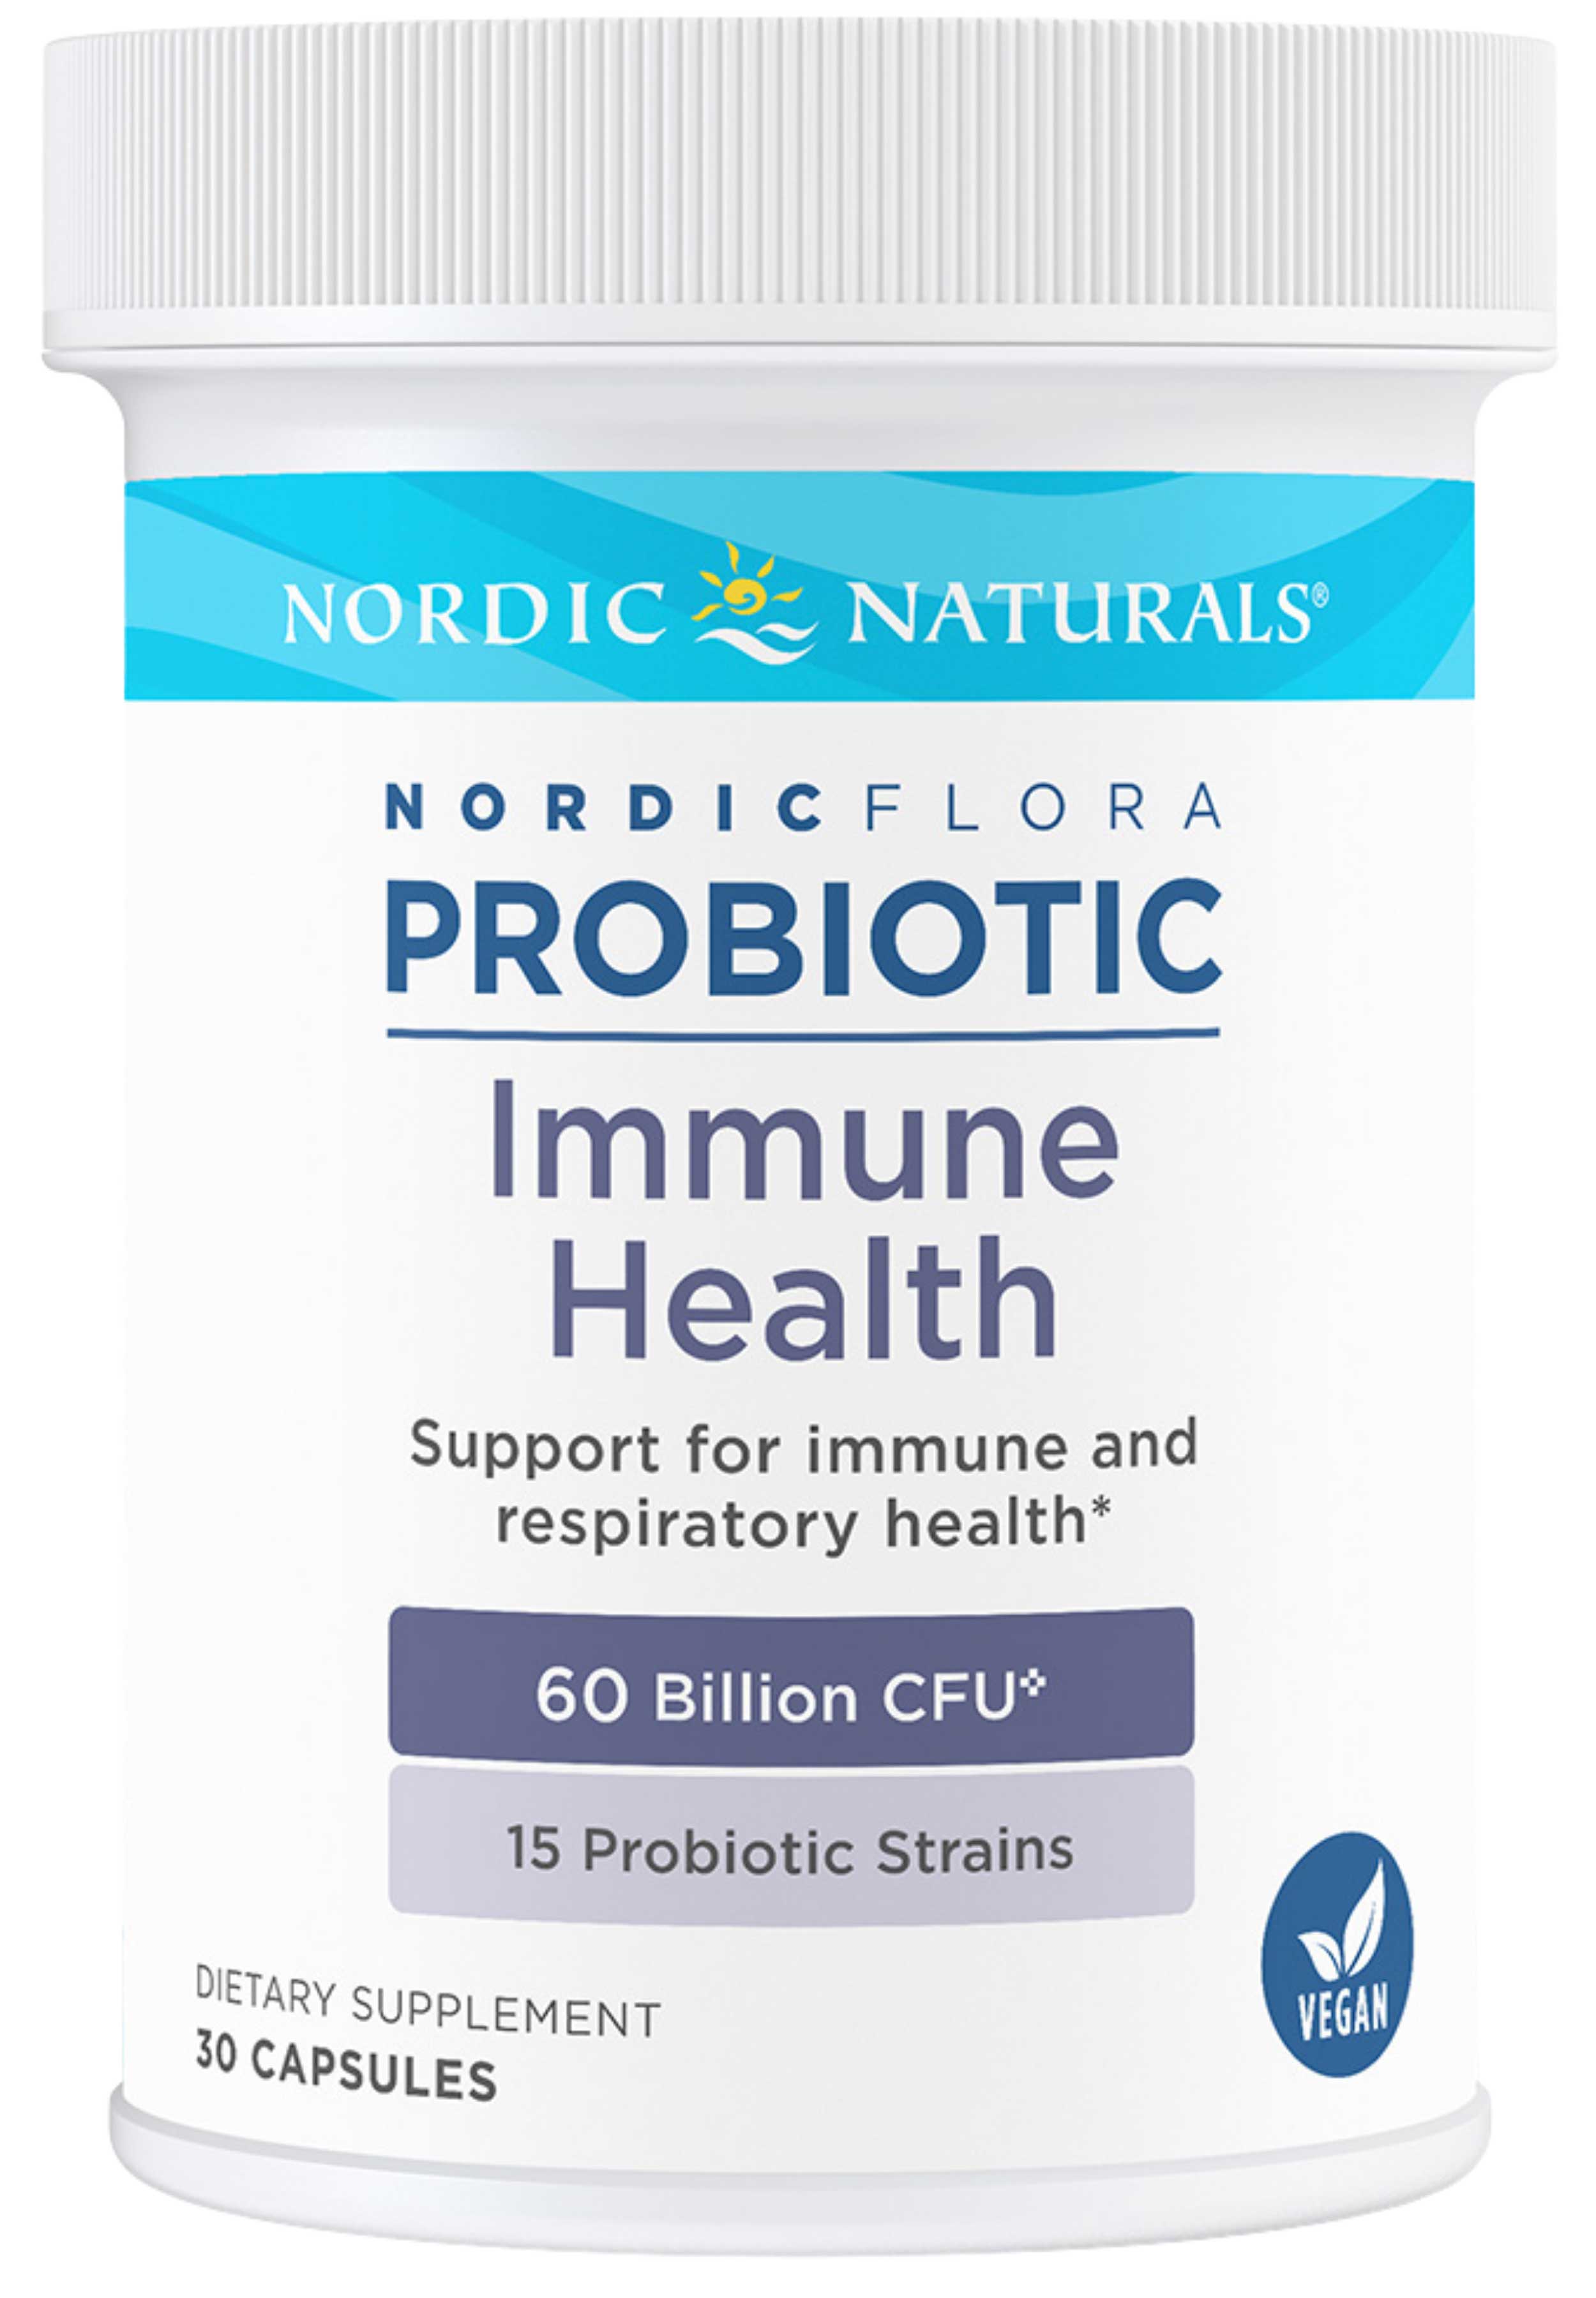 Nordic Naturals Nordic Flora Probiotic Immune Health